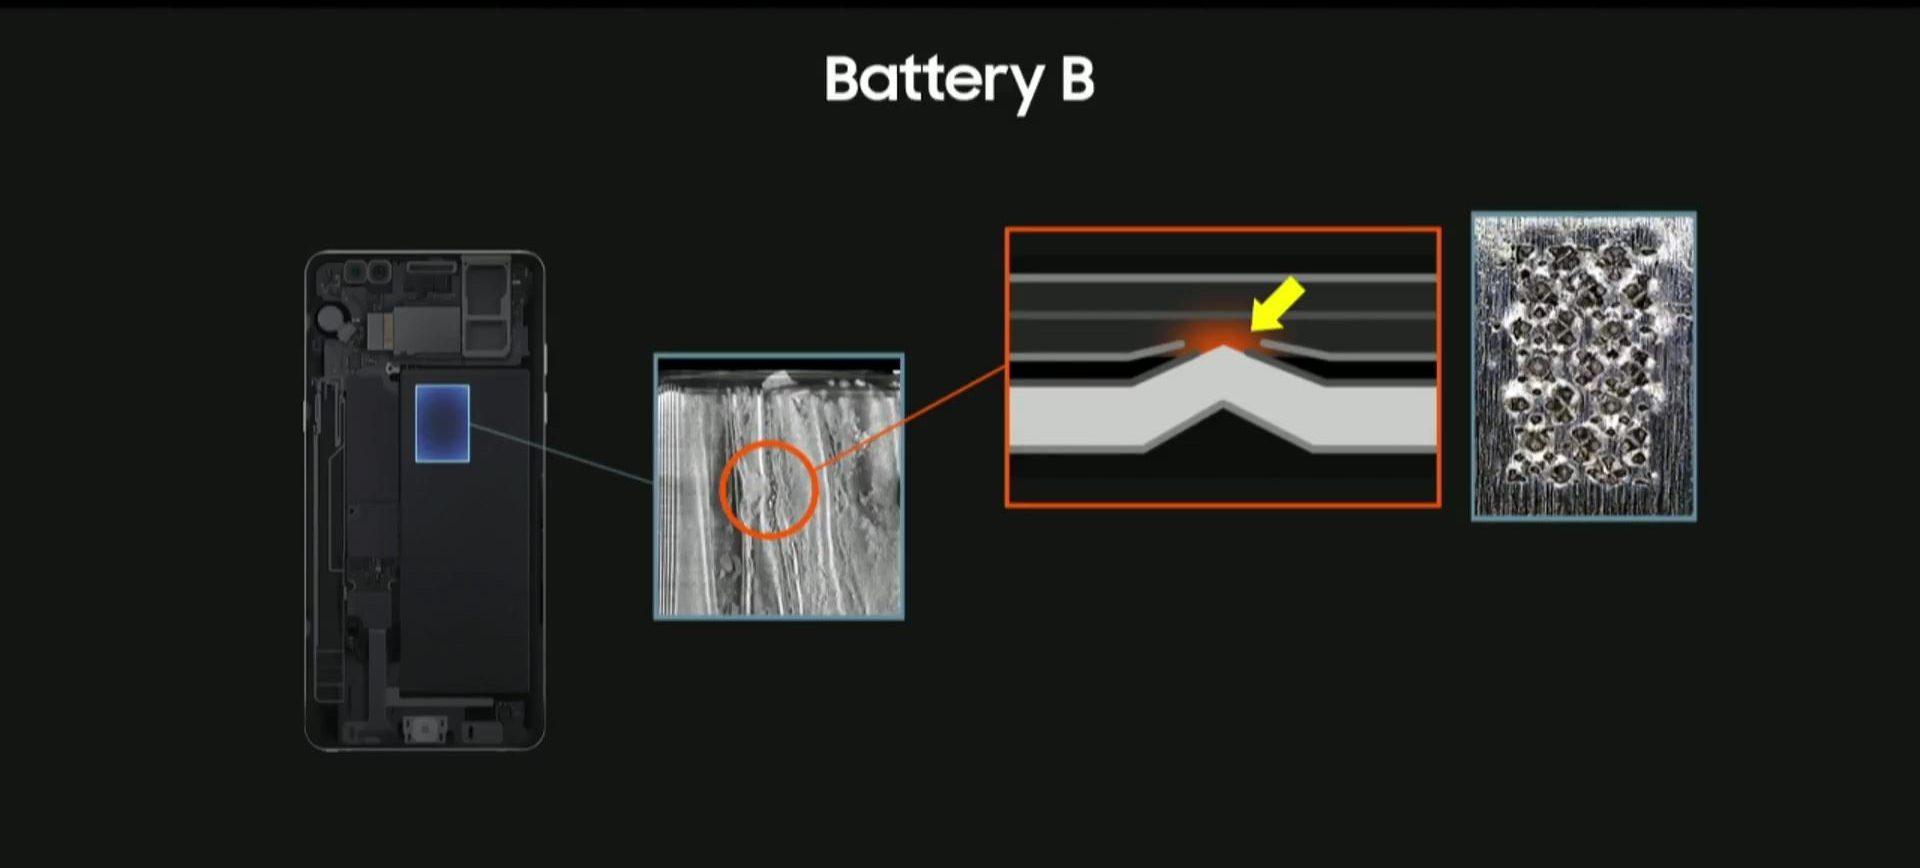 Galaxy Note 7 de Samsung, problemas batería